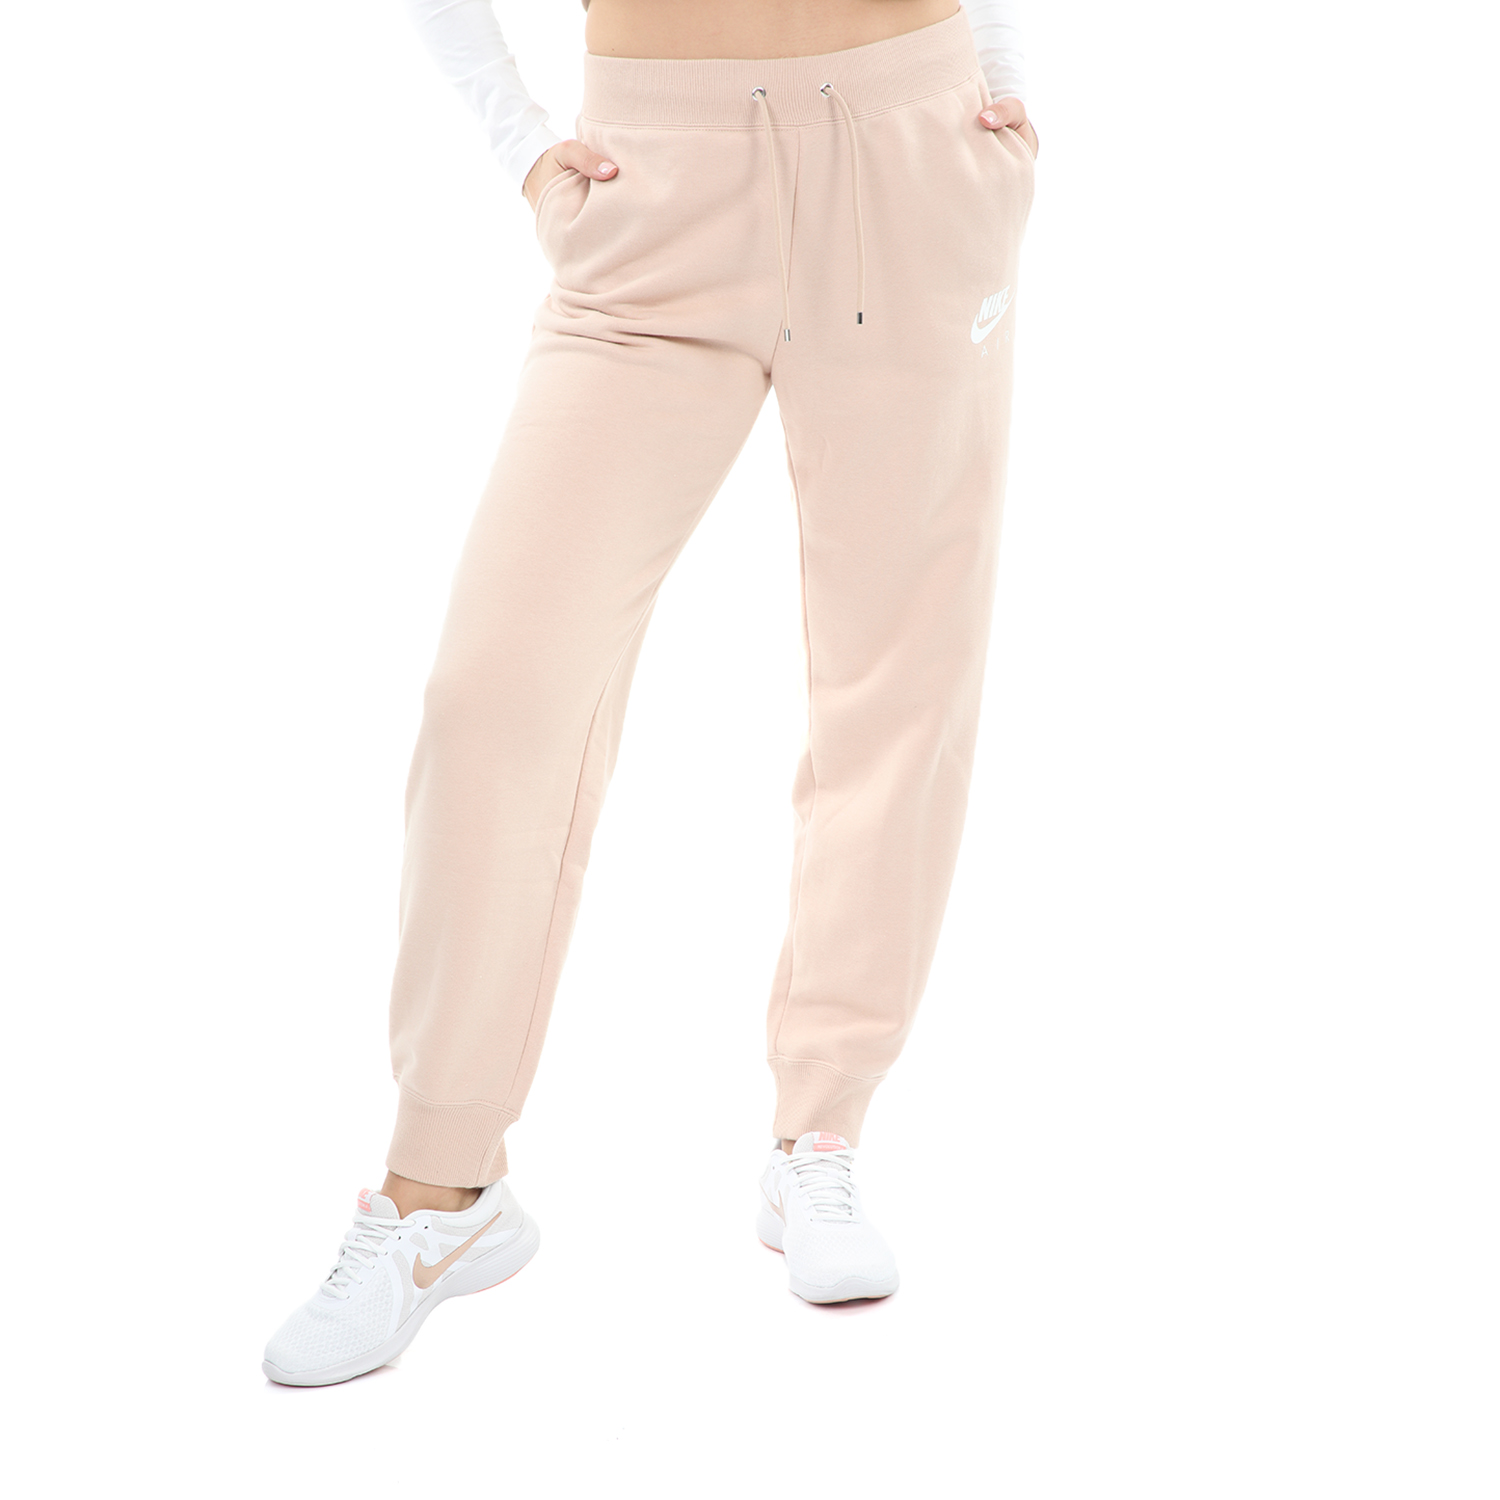 Γυναικεία/Ρούχα/Αθλητικά/Φόρμες NIKE - Γυναικεία φόρμα NIKE SW AIR PANT FLC BB ροζ